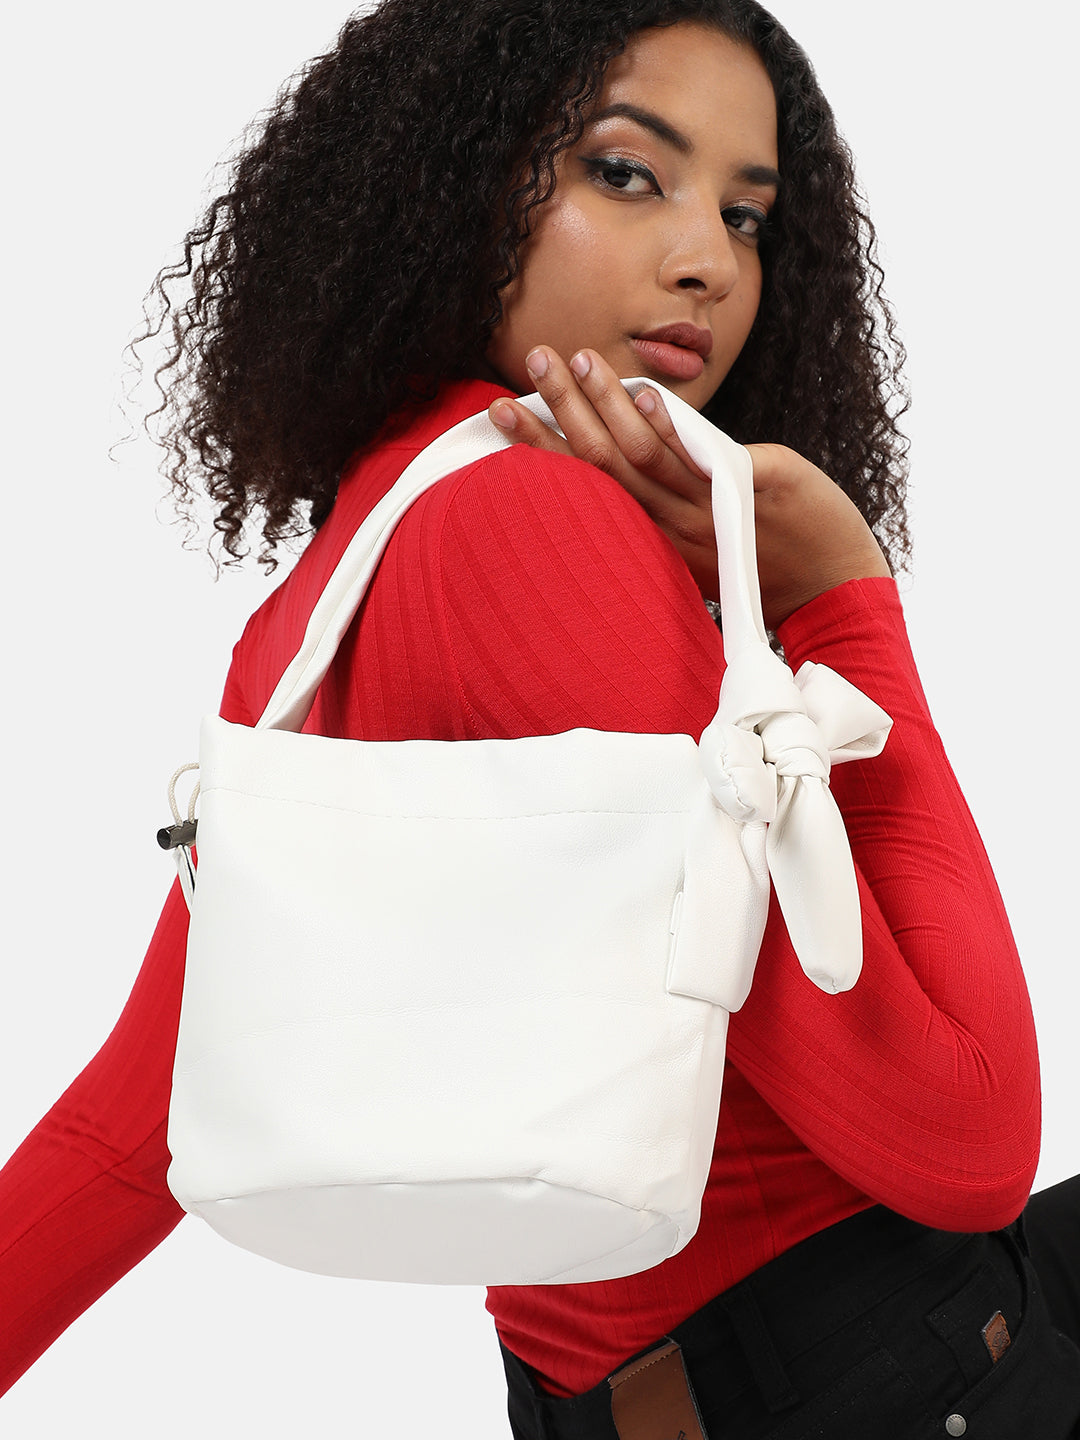 White Solid Vegan Leather Shoulder Bag